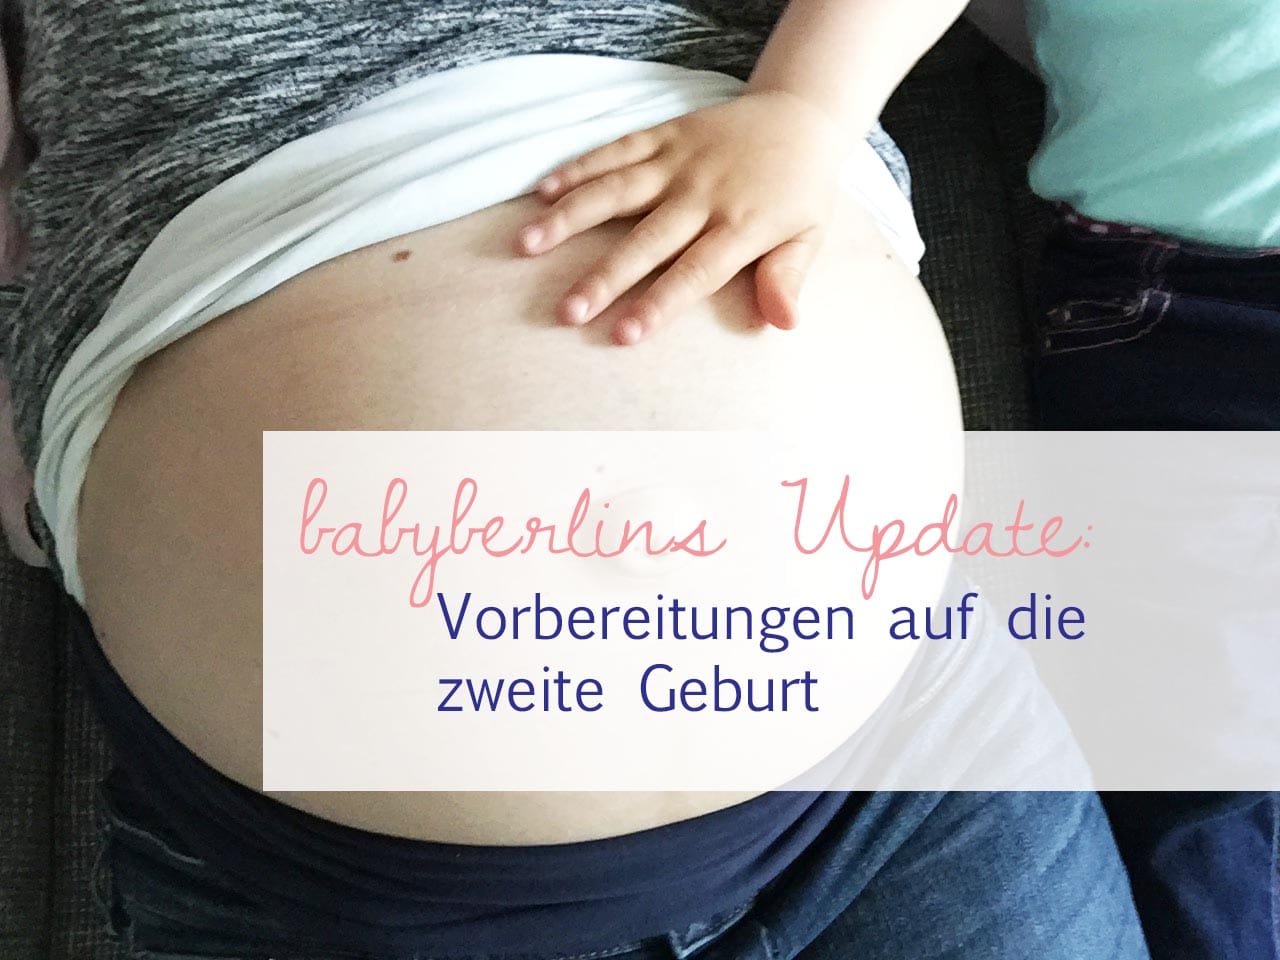 babyberlins Update: Vorbereitungen auf die zweite Geburt